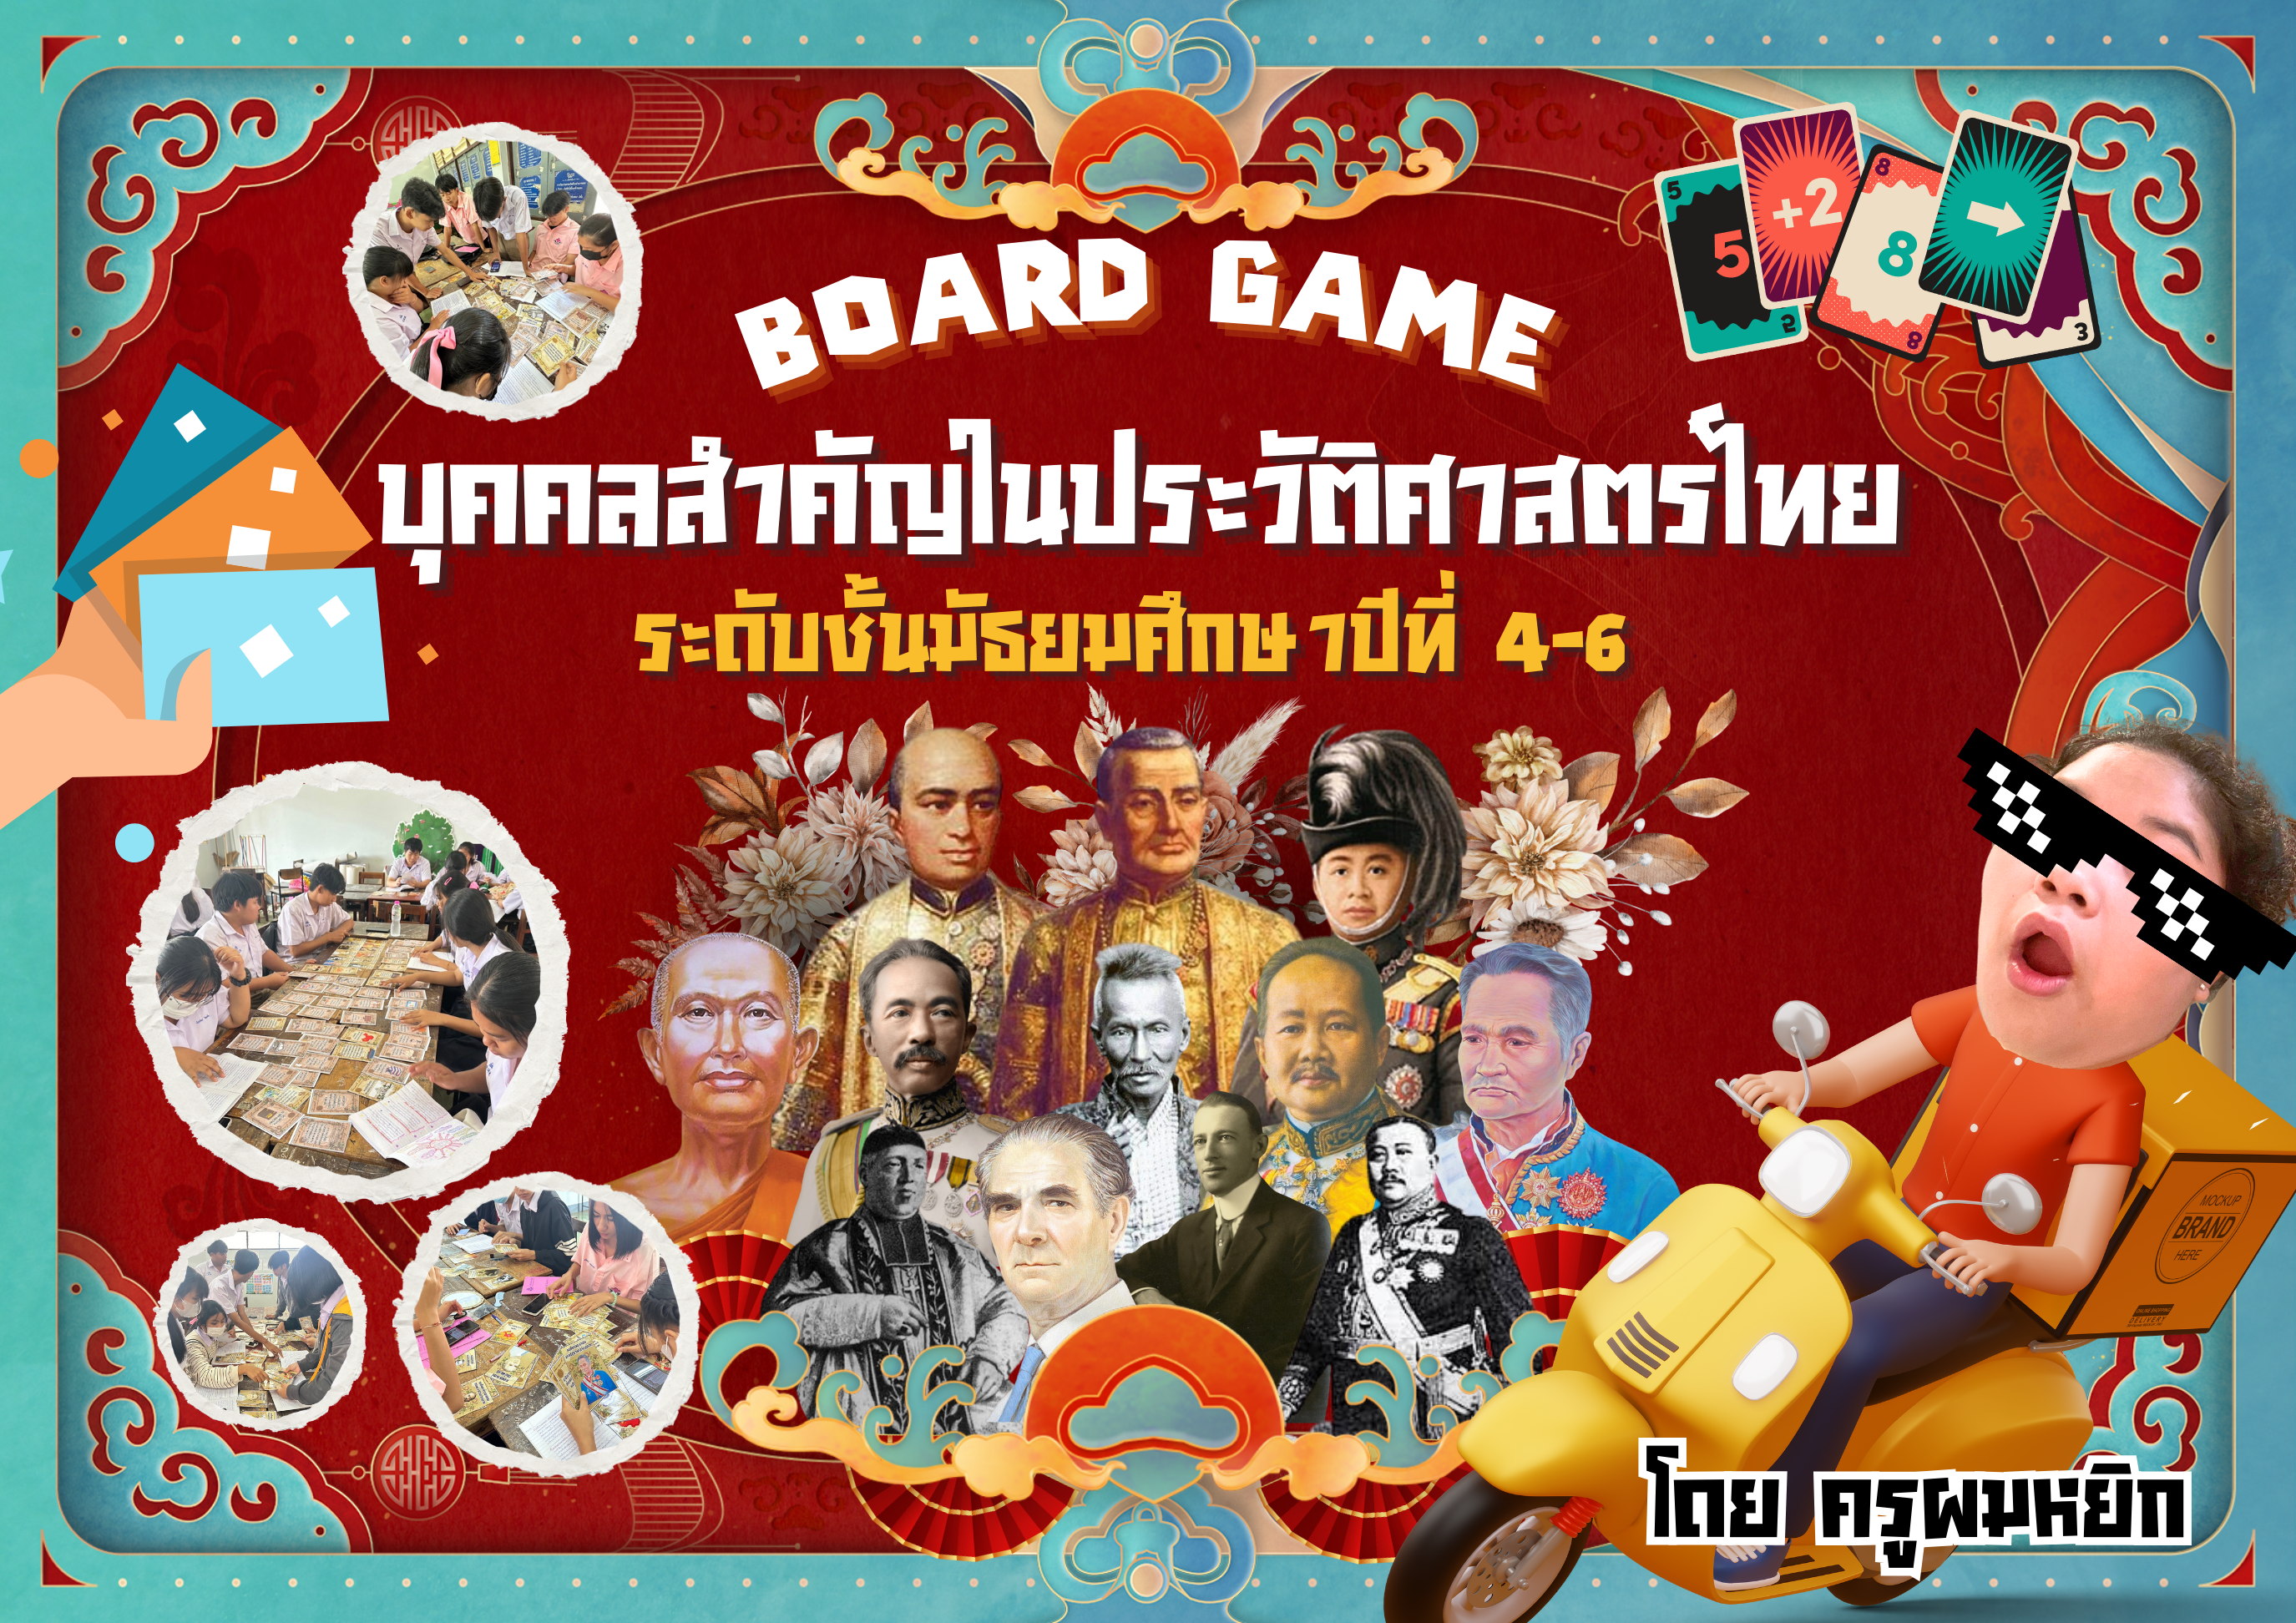 ภาพประกอบไอเดีย Board Game บุคคลสำคัญในประวัติศาสตร์ไทย ม.4-6 